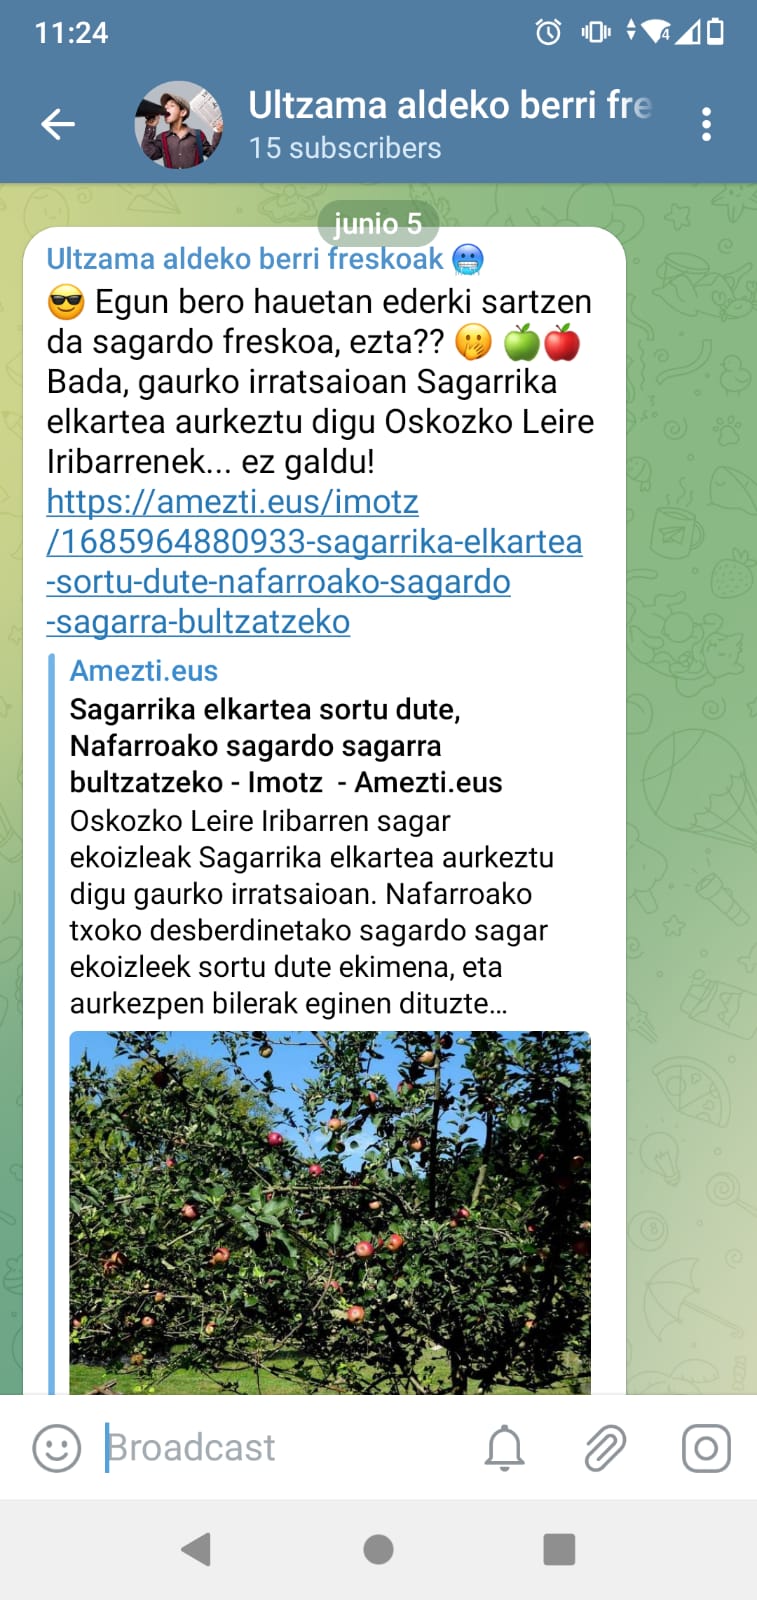 https://amezti.tok-md.com/argazkiak/bKA/telegram2.jpeg